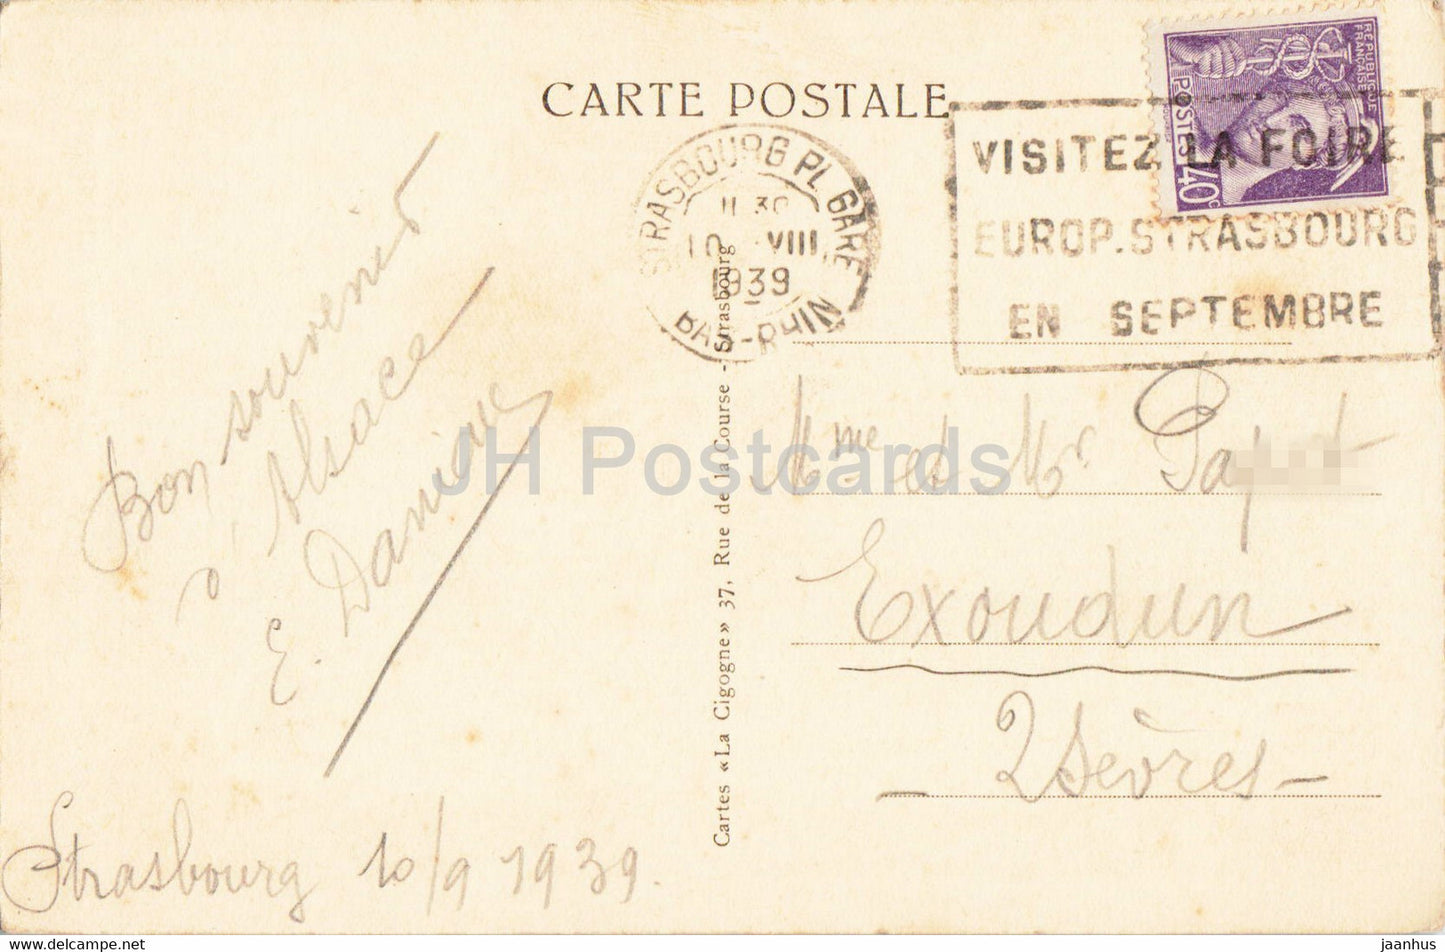 Strassburg i E - Strasbourg - Cathedrale - L'Horloge Astronomique - cathedral 479 - old postcard - 1939 - France - used